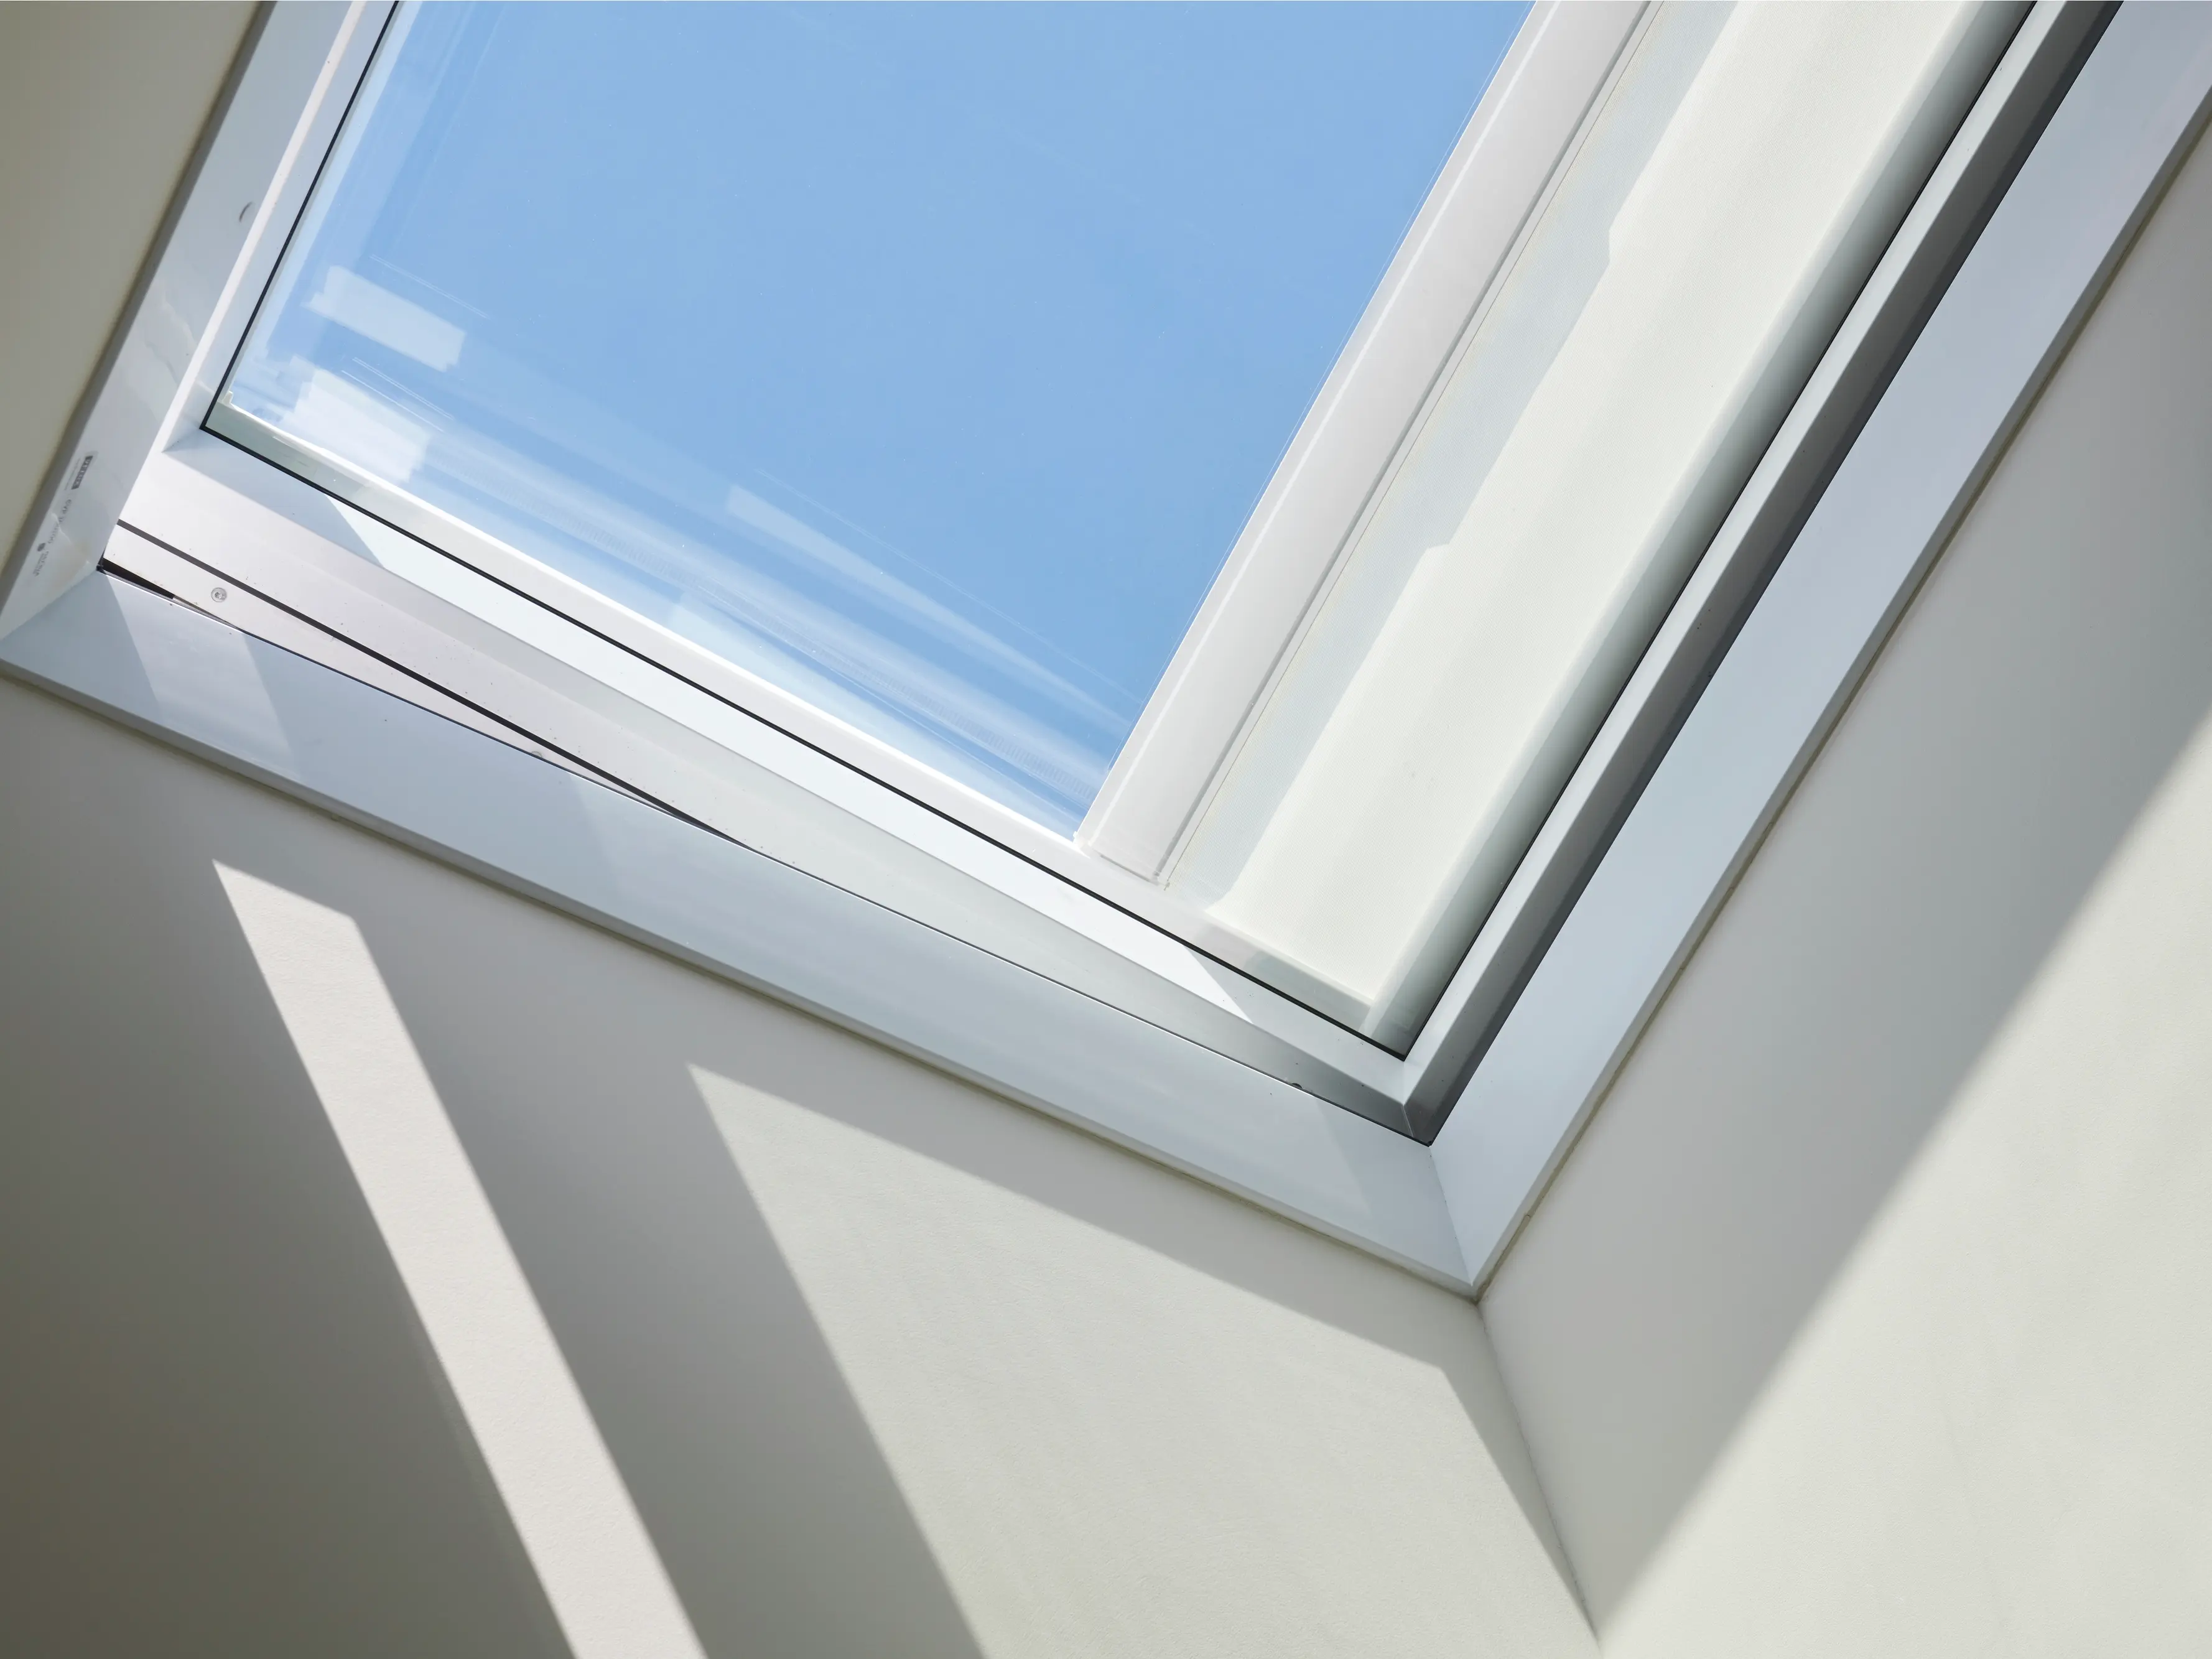 Fenêtre de toit minimaliste VELUX laissant entrer la lumière naturelle et la vue du ciel bleu.